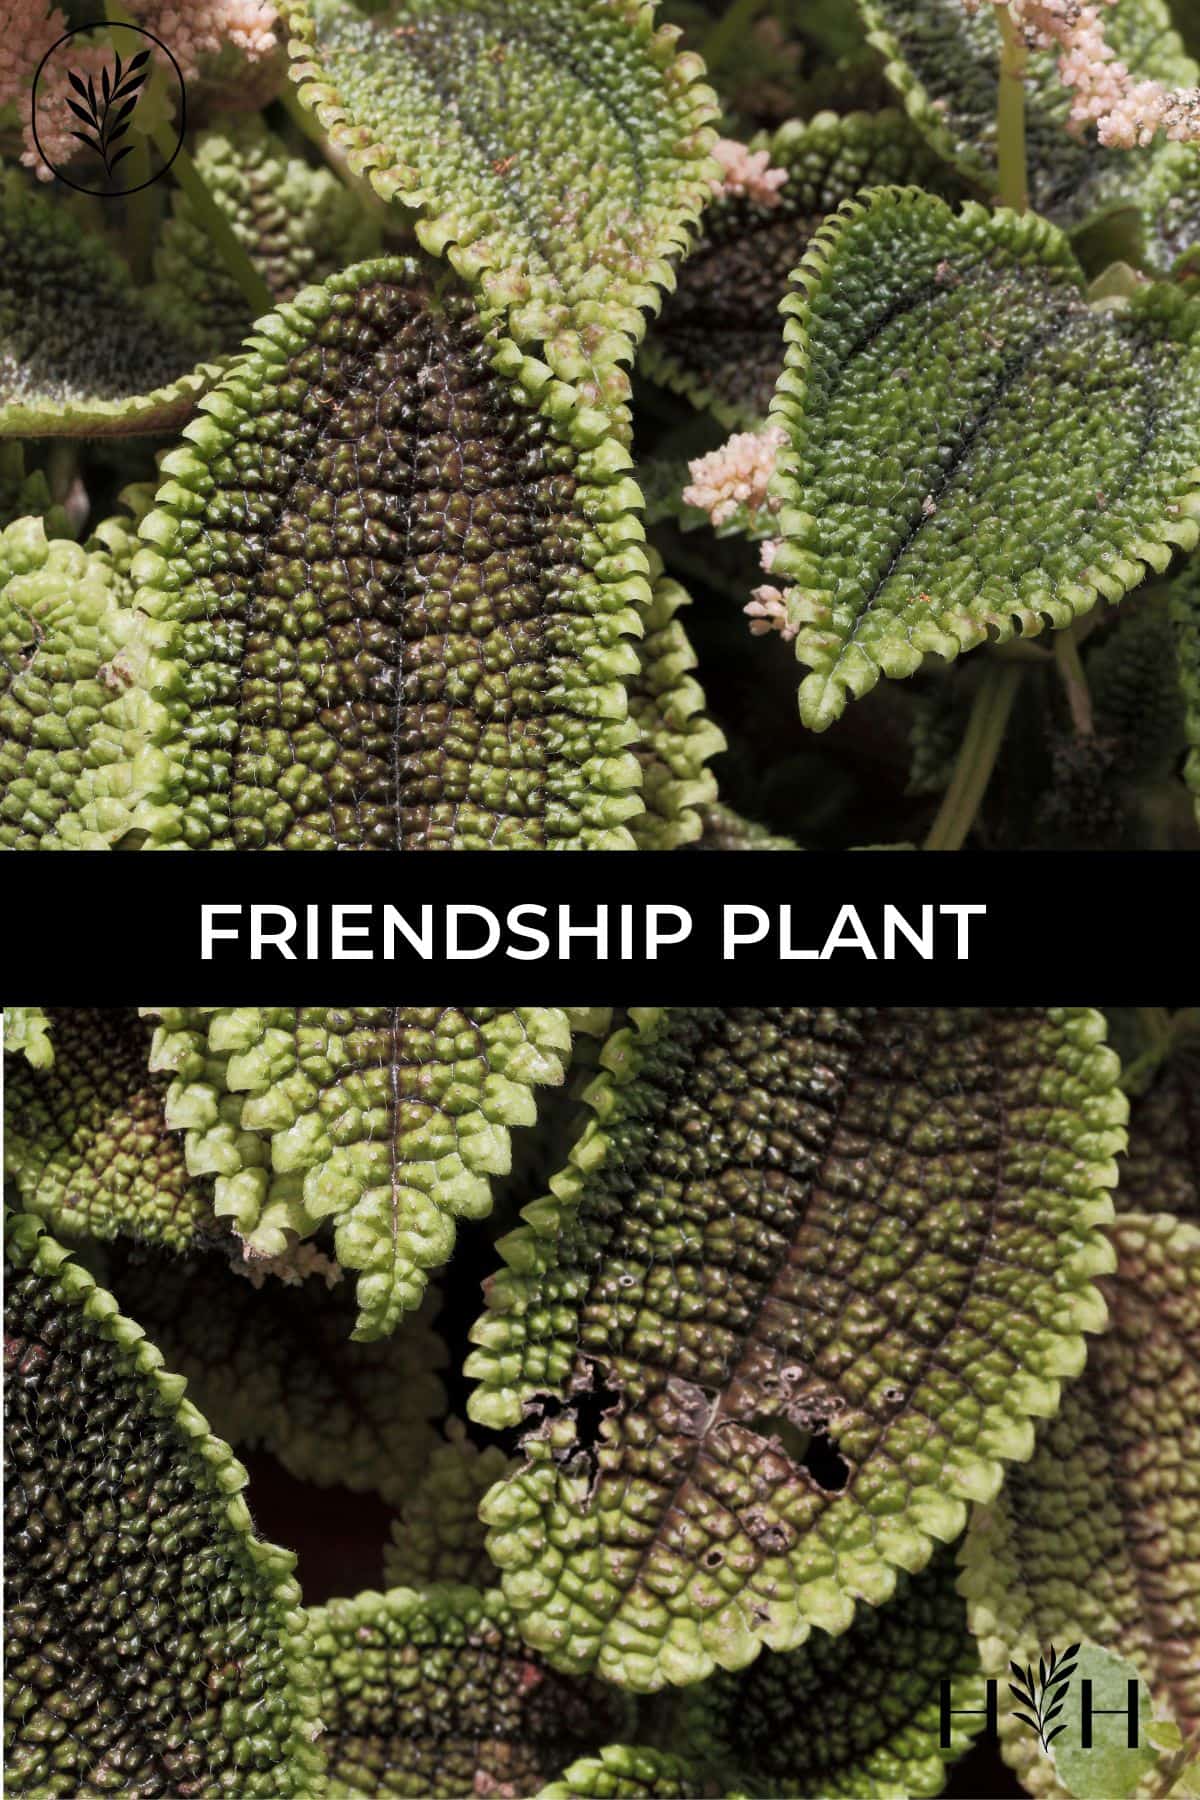 Friendship plant via @home4theharvest